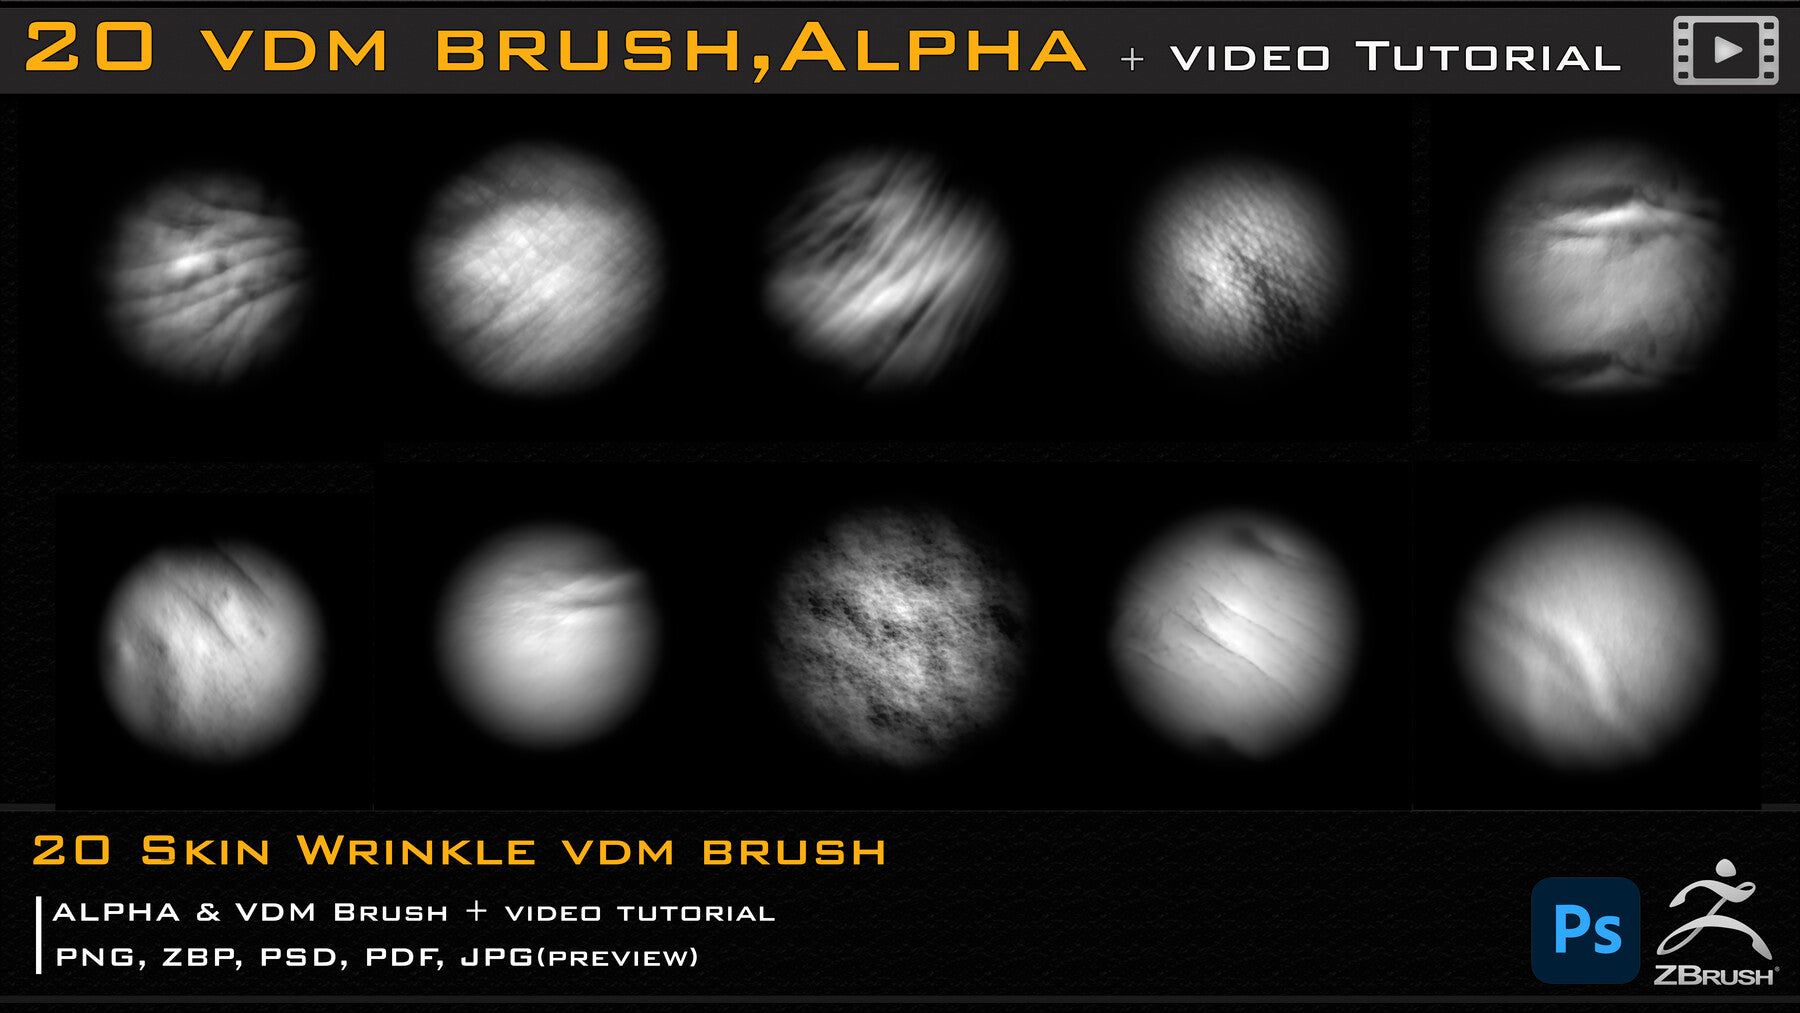 20 Skin Wrinkle VDM Brush & Alpha + Video Tutorial